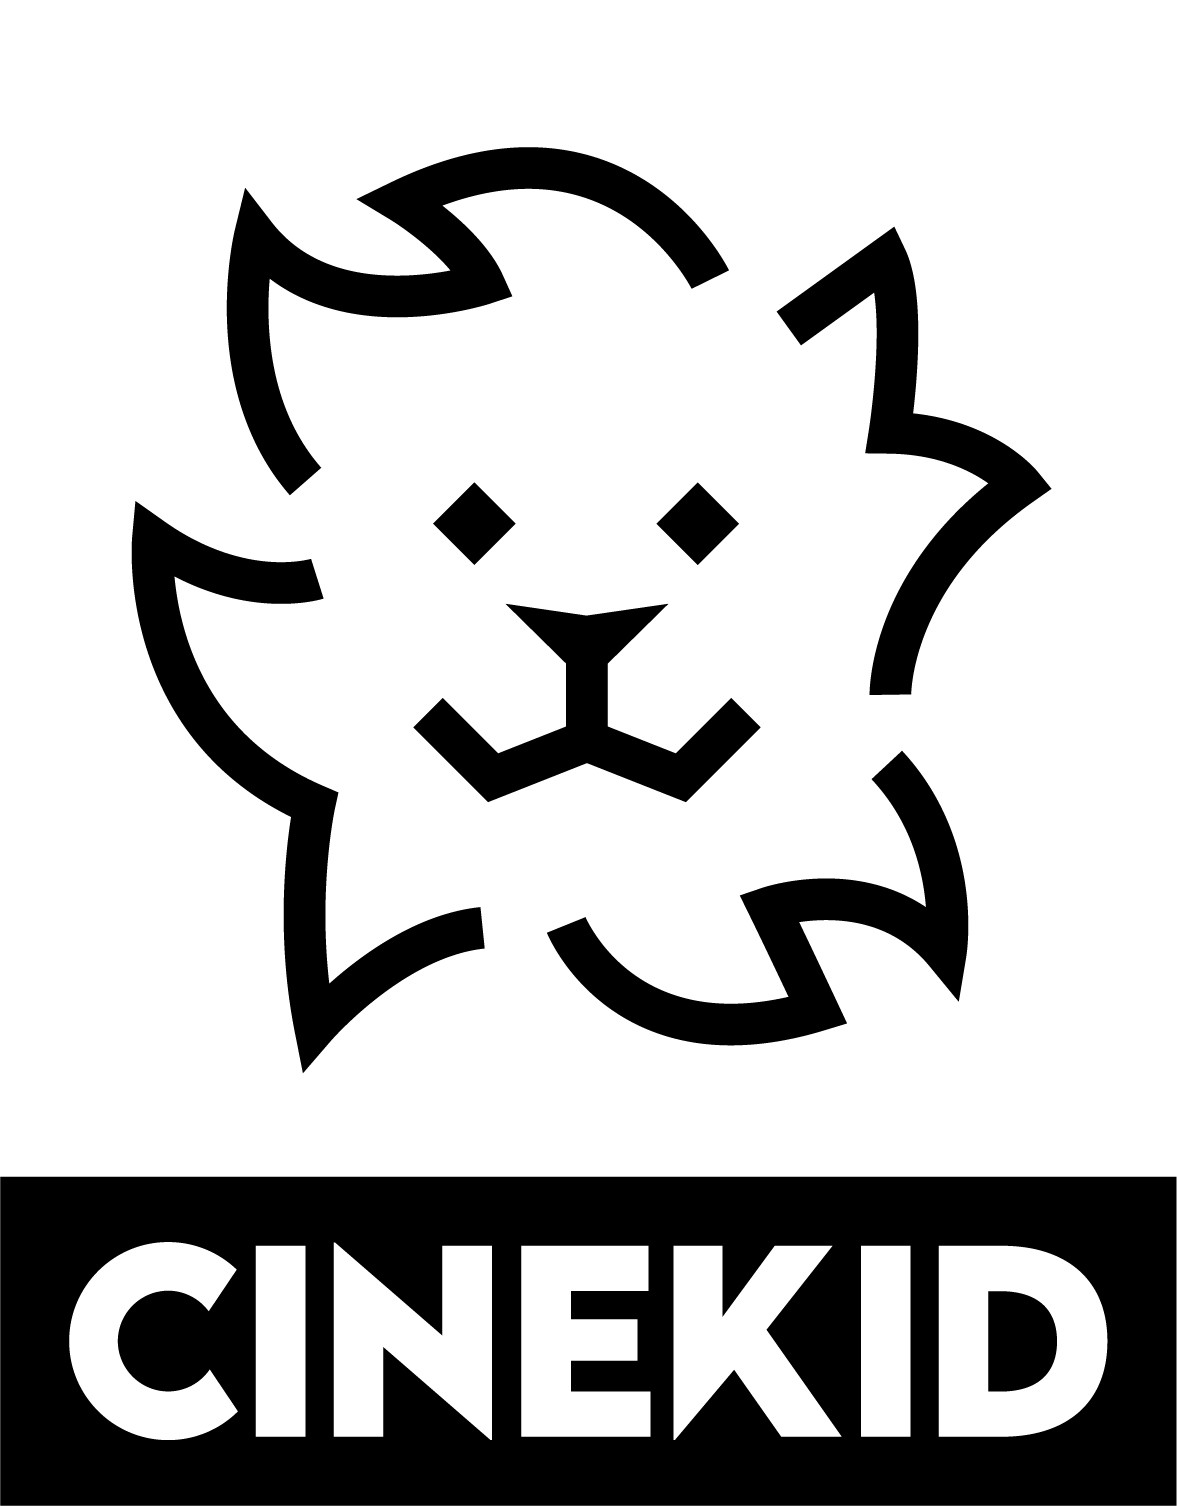 Cinekid on tour in Cinema Middelburg 